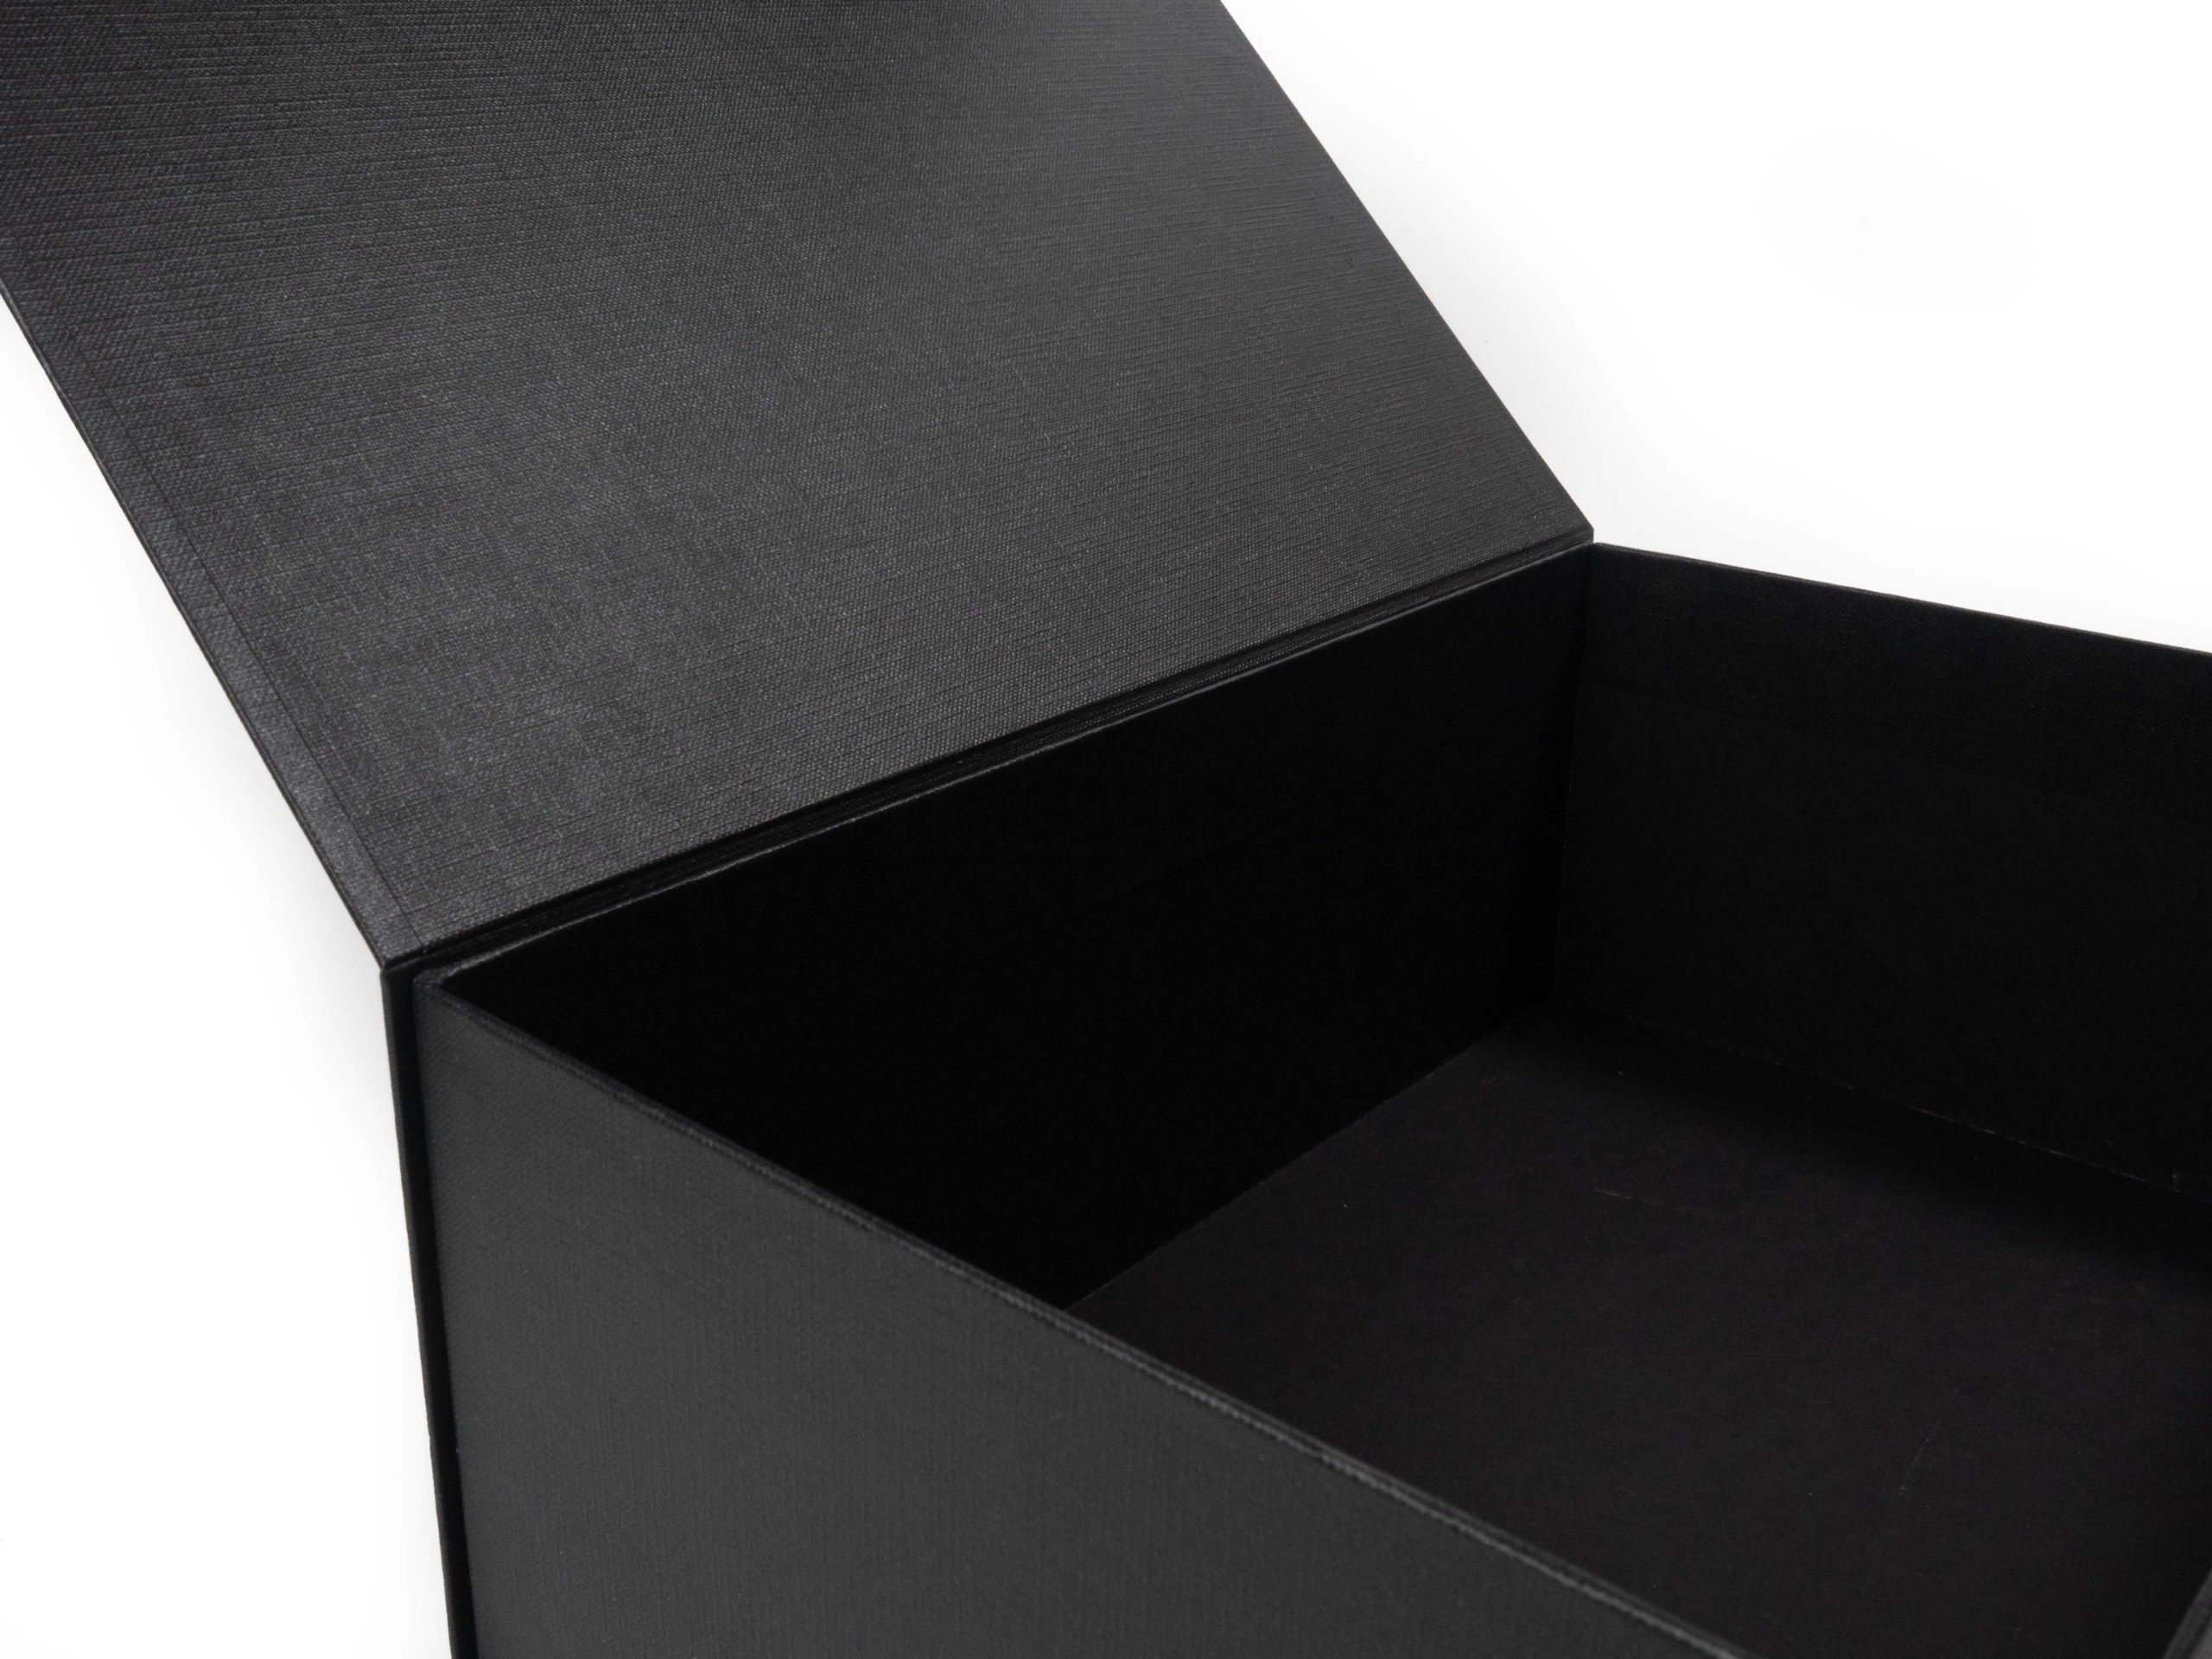 Dárková krabice s magnetickým zavíráním byla vyrobena zcela na zakázku jako dárek k představení nového vozu Lexus. Zvenku byla použita stříbrná ražba loga.